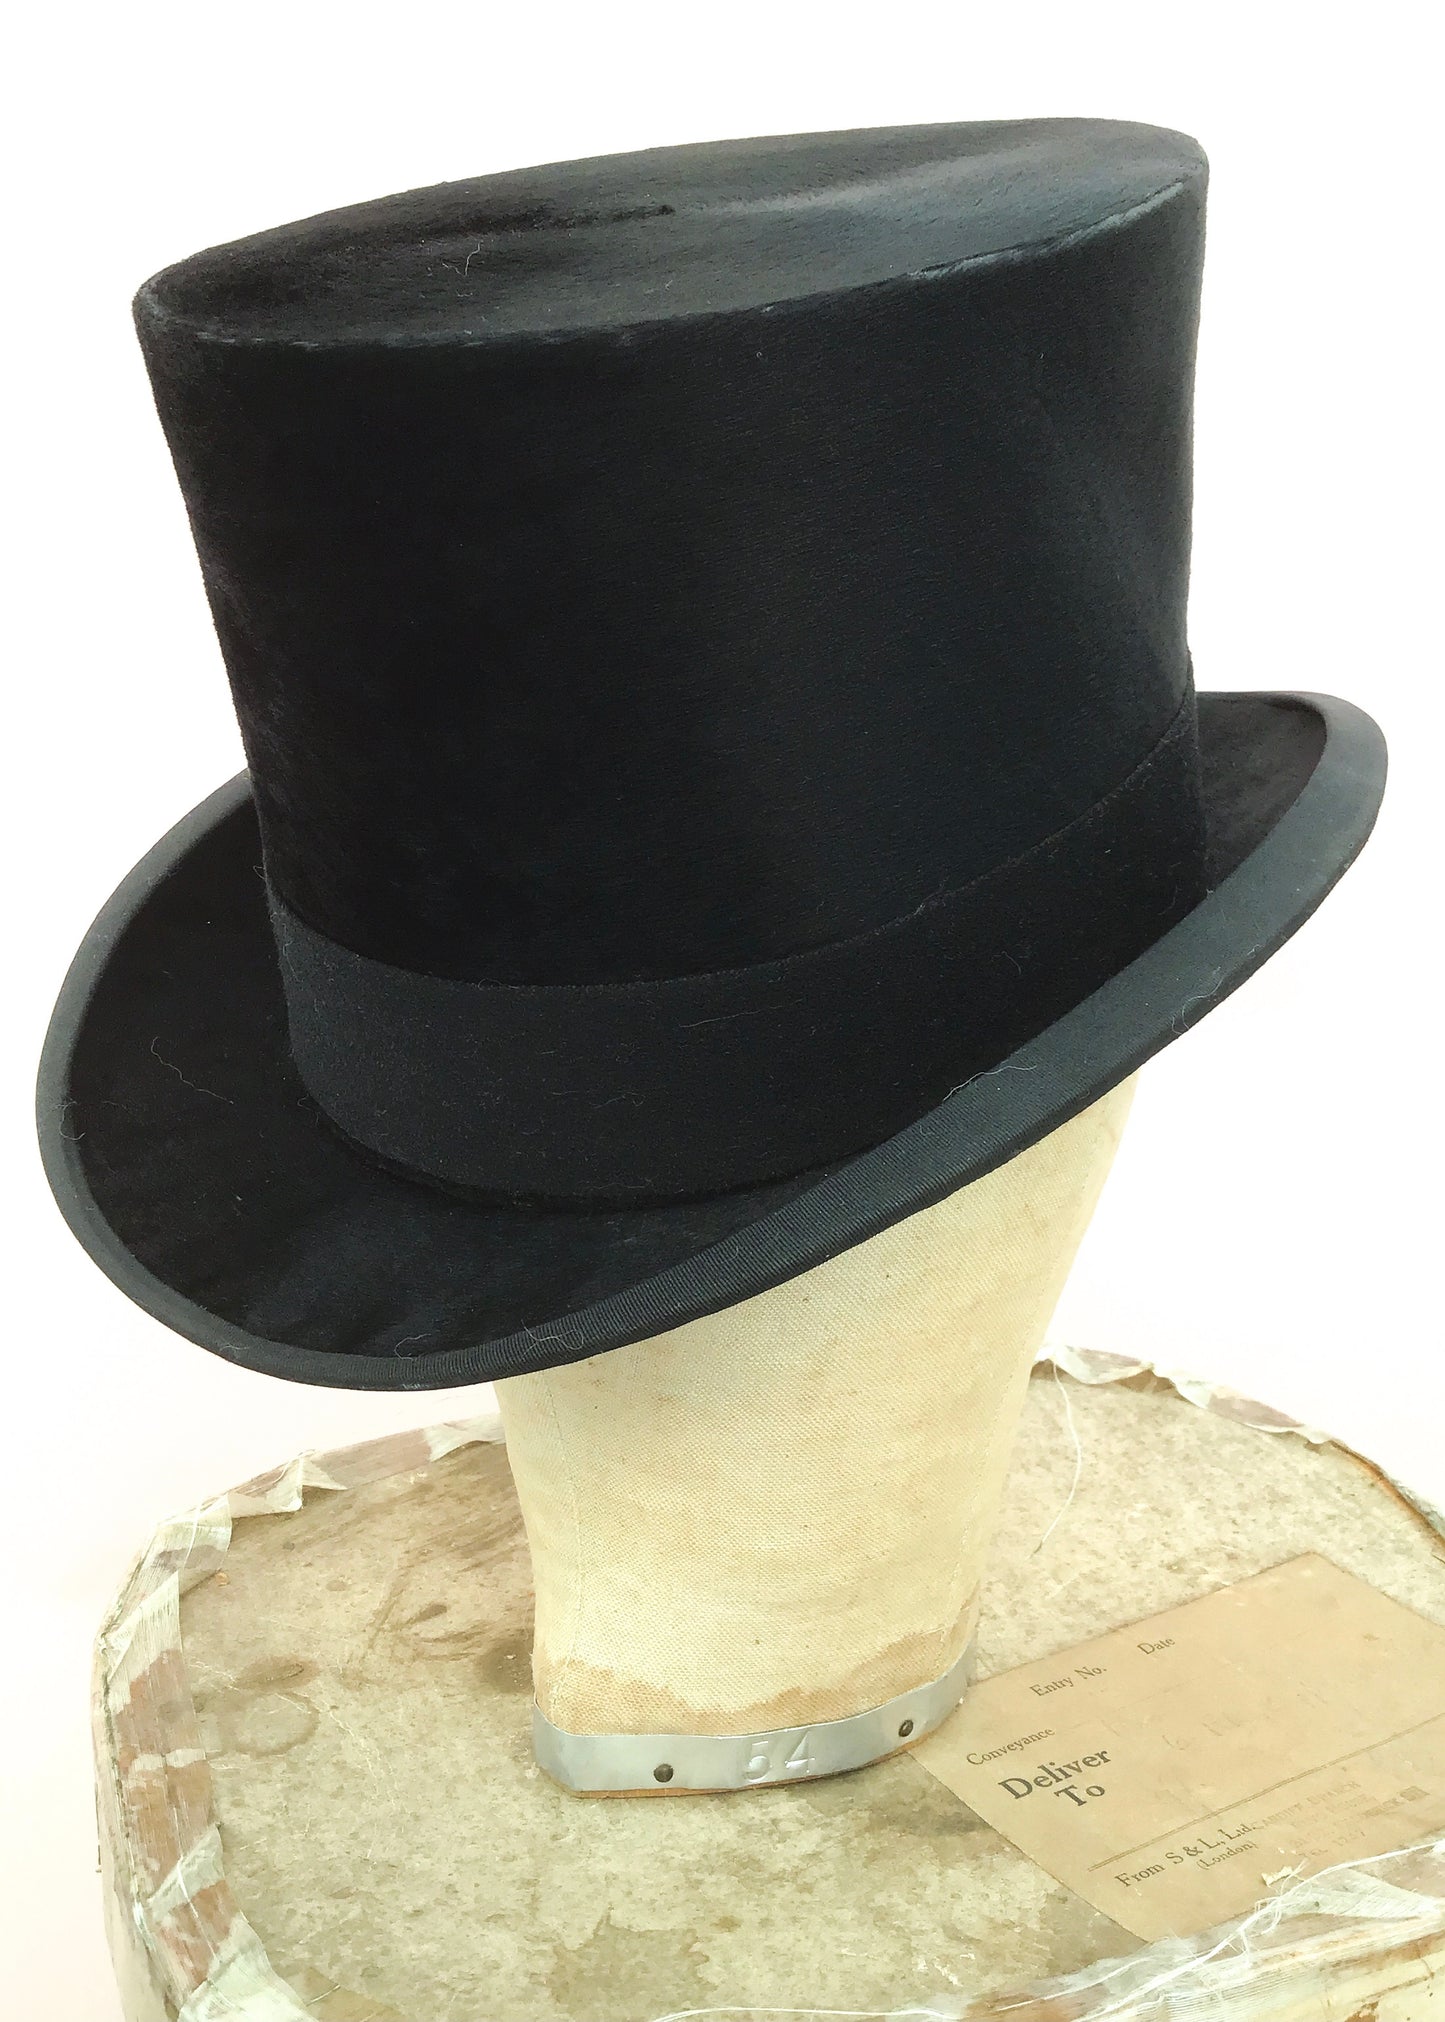 1920s Vintage Christie's Silk Top Hat in Christie's box